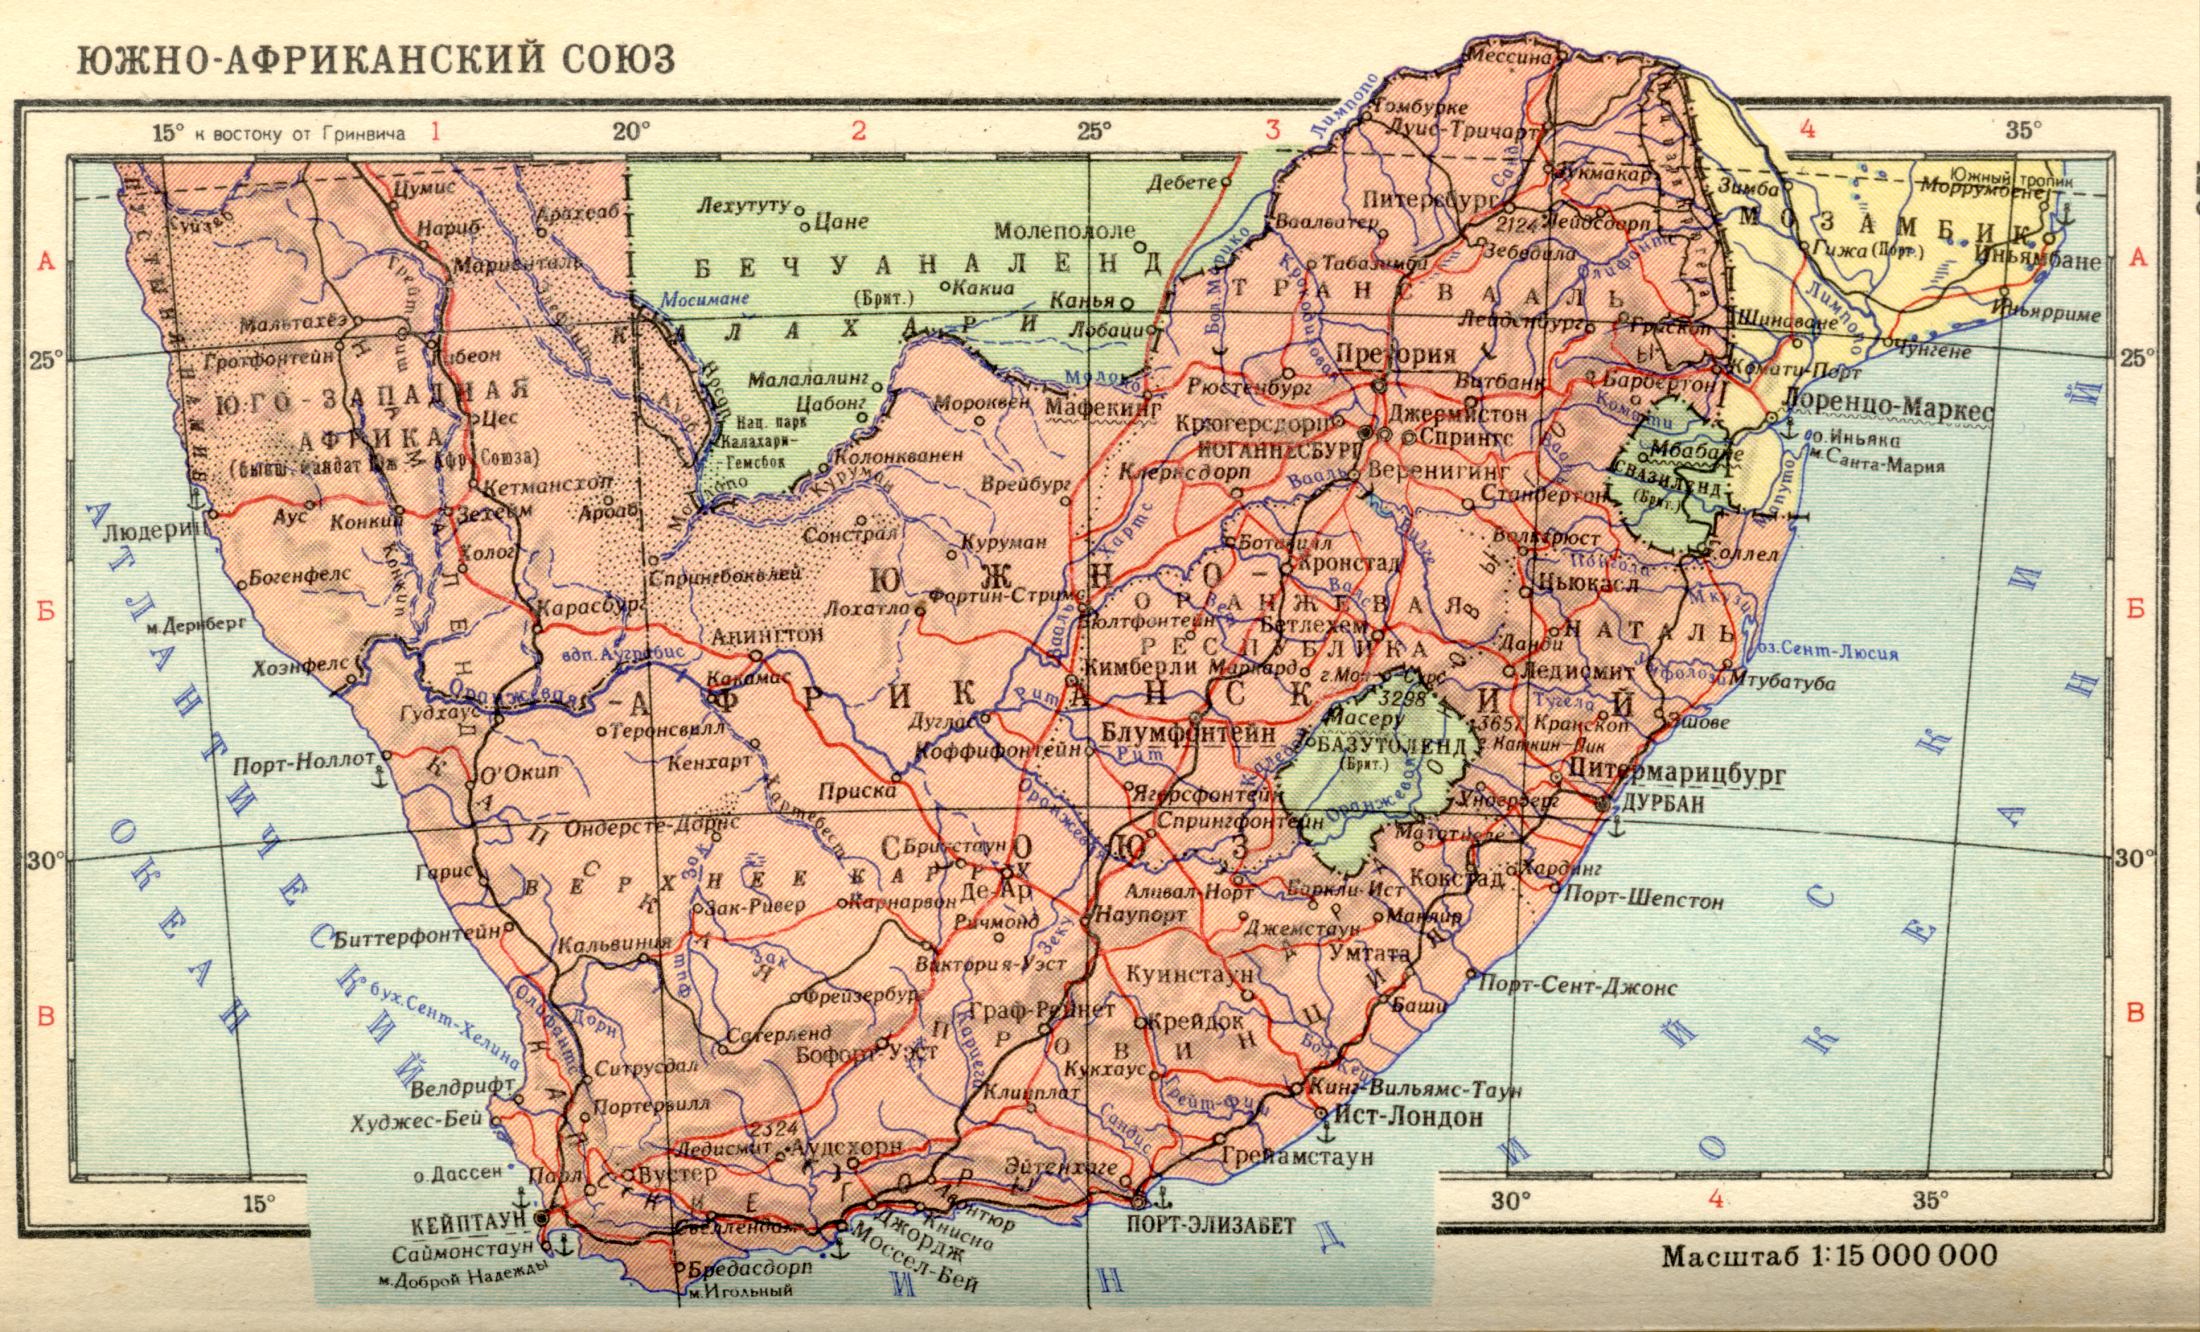 1956 год. Политическая карта мира. Южно-Африканский союз в 1956 году. Скачать бесплатно подробную карту 